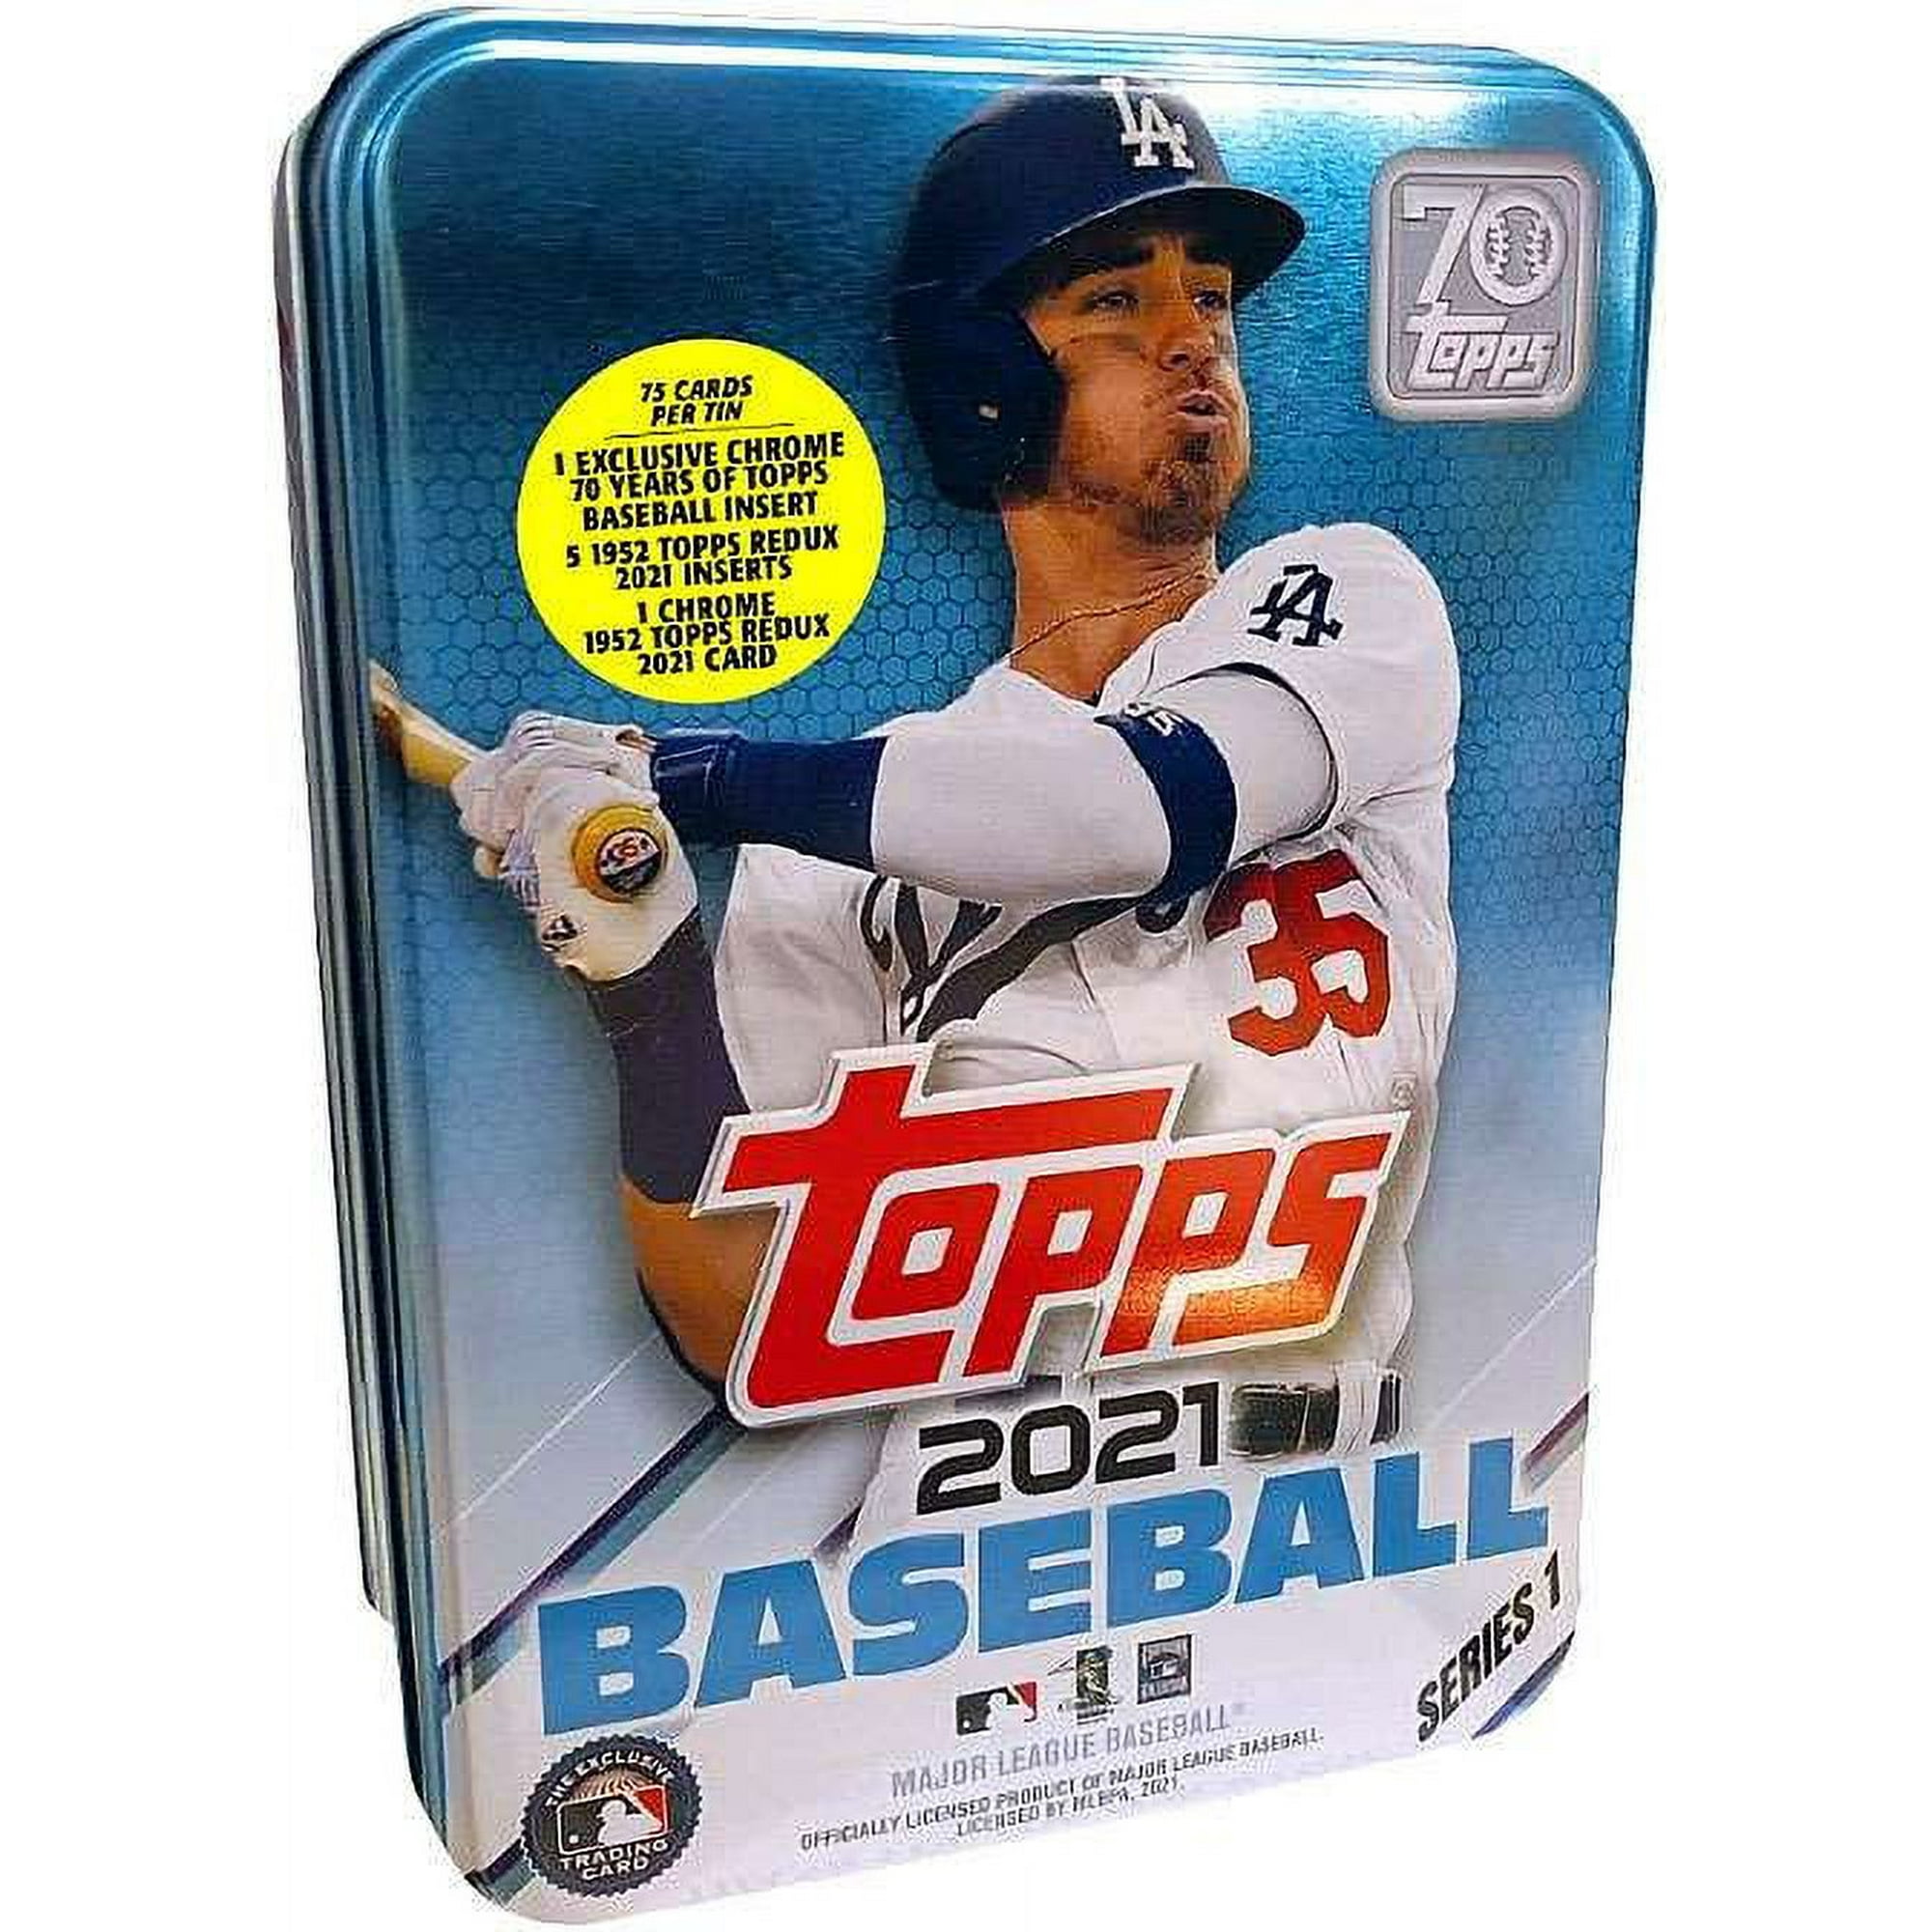 MLB 2021 Series 1 Baseball Cody Bellinger Trading Card Tin Set (75